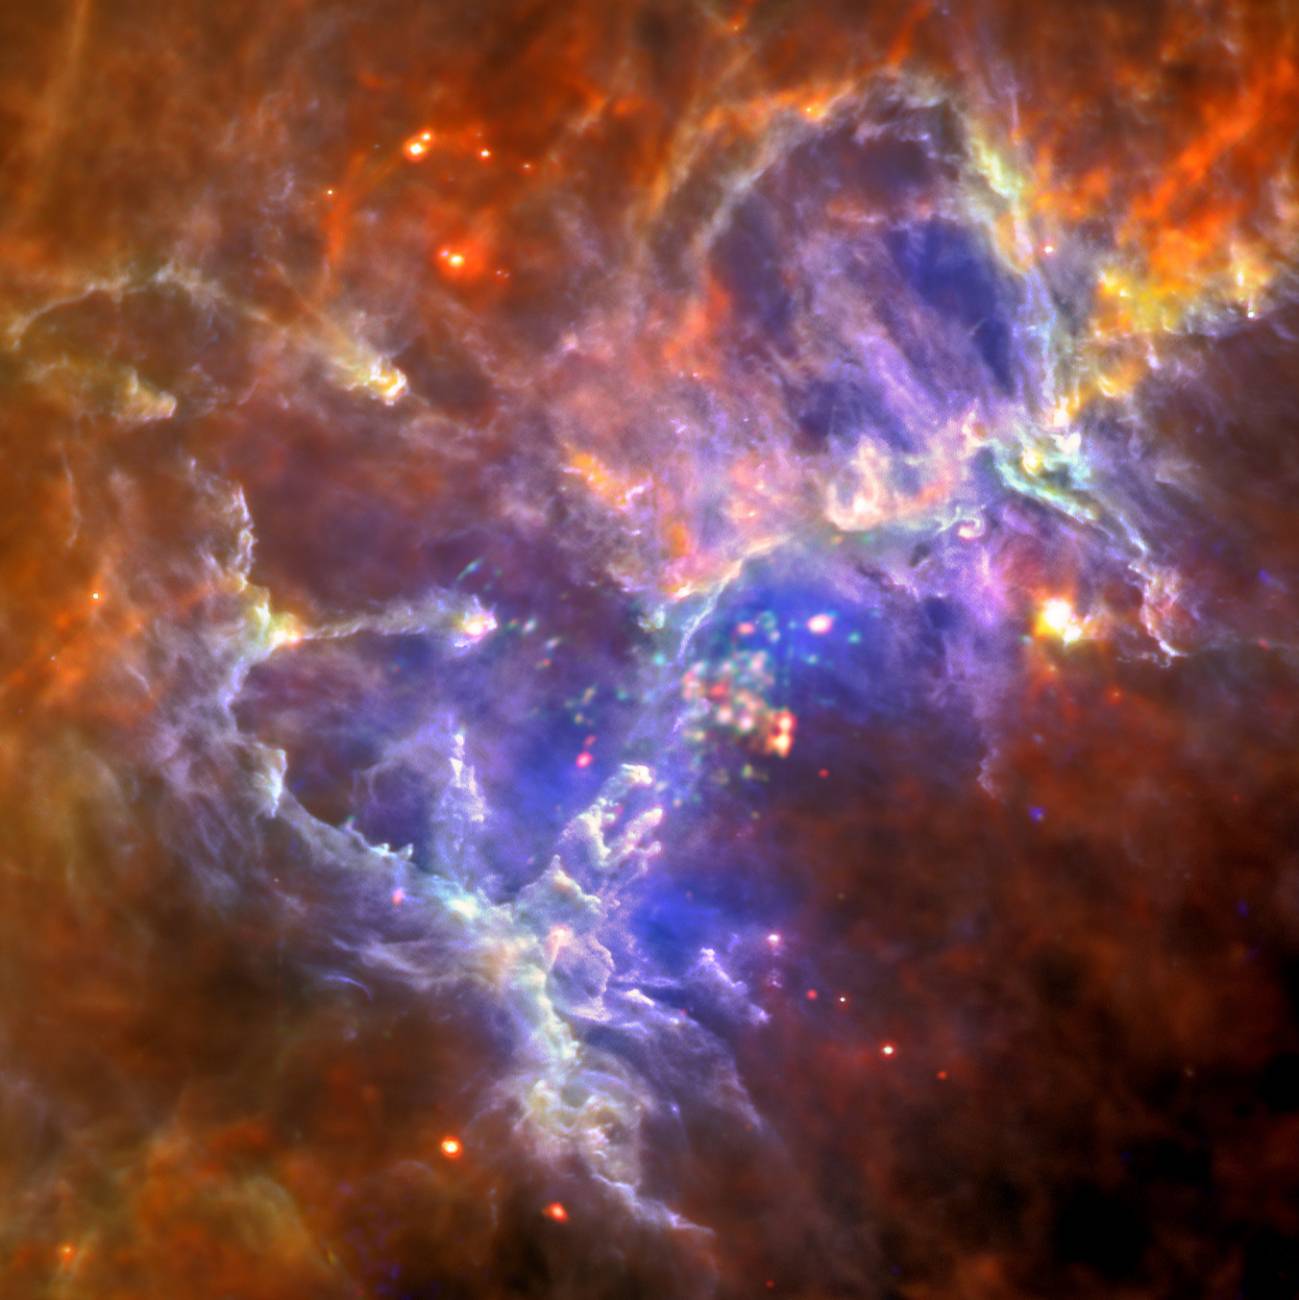 Nebulosa del Águila vista por Herschel y Xmm-Newton 